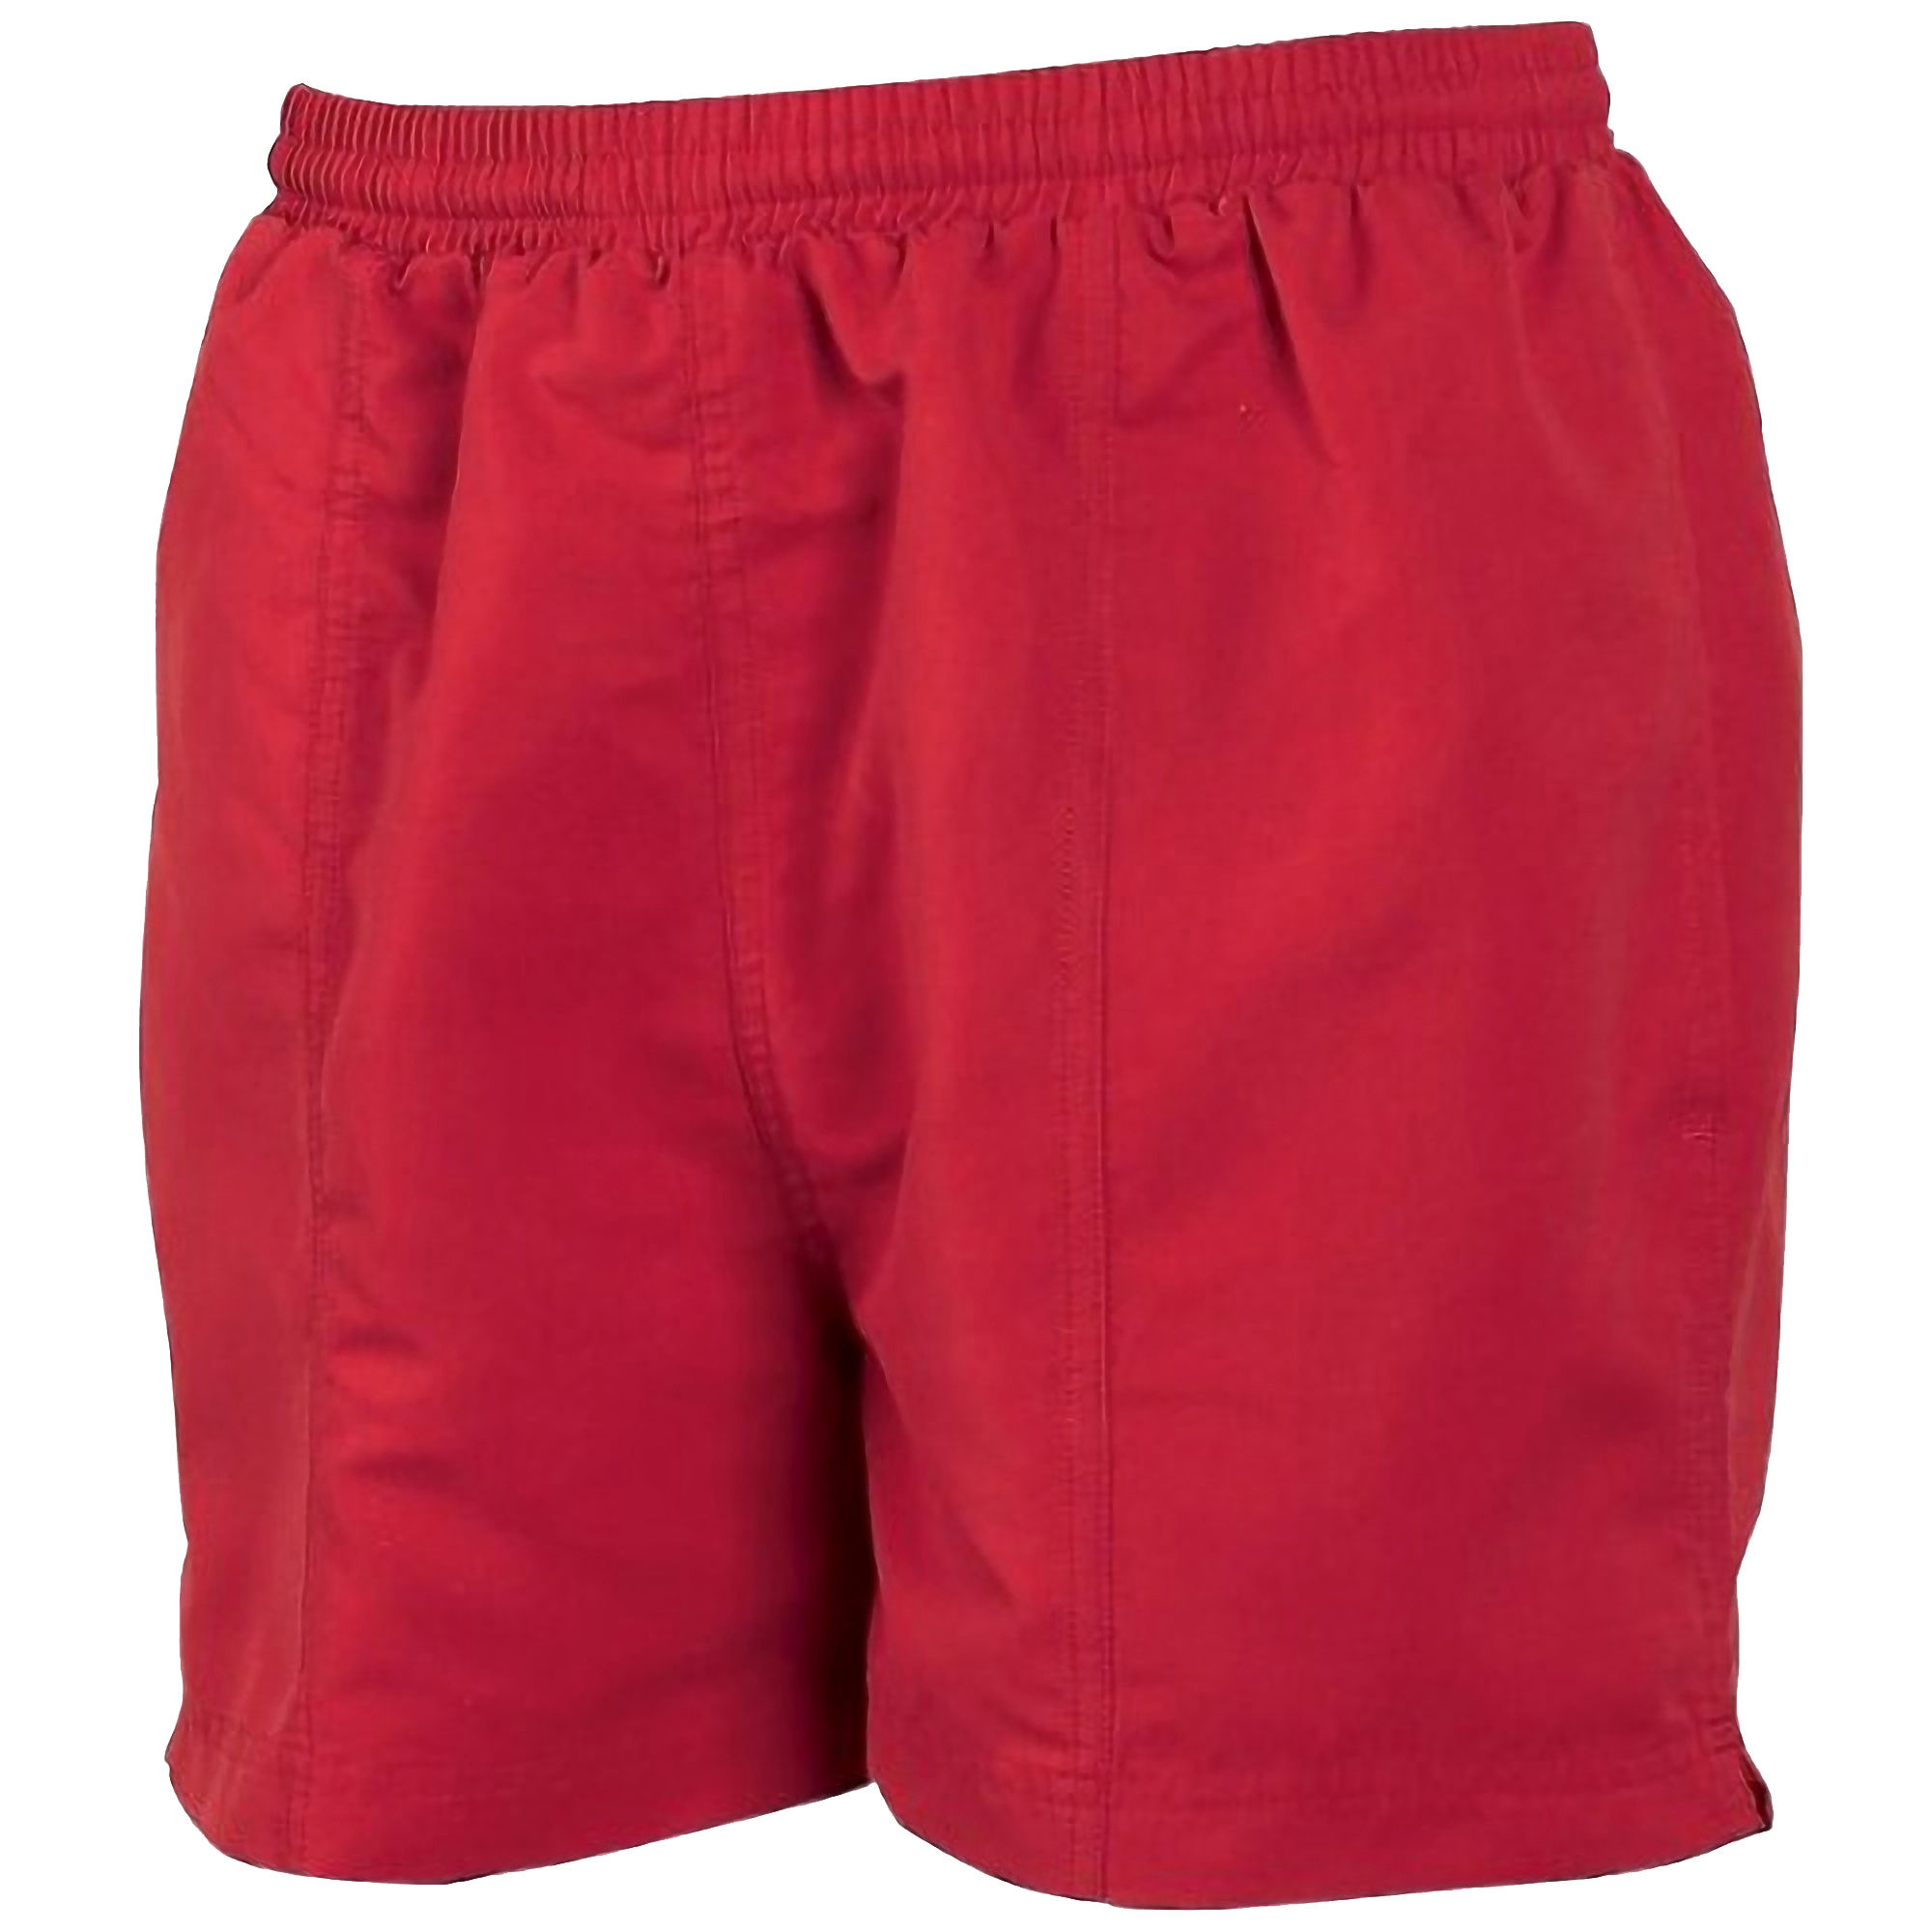 Tombo Pantalones Corto Para Todo Tipo De Deportes Teamsport - rojo - 